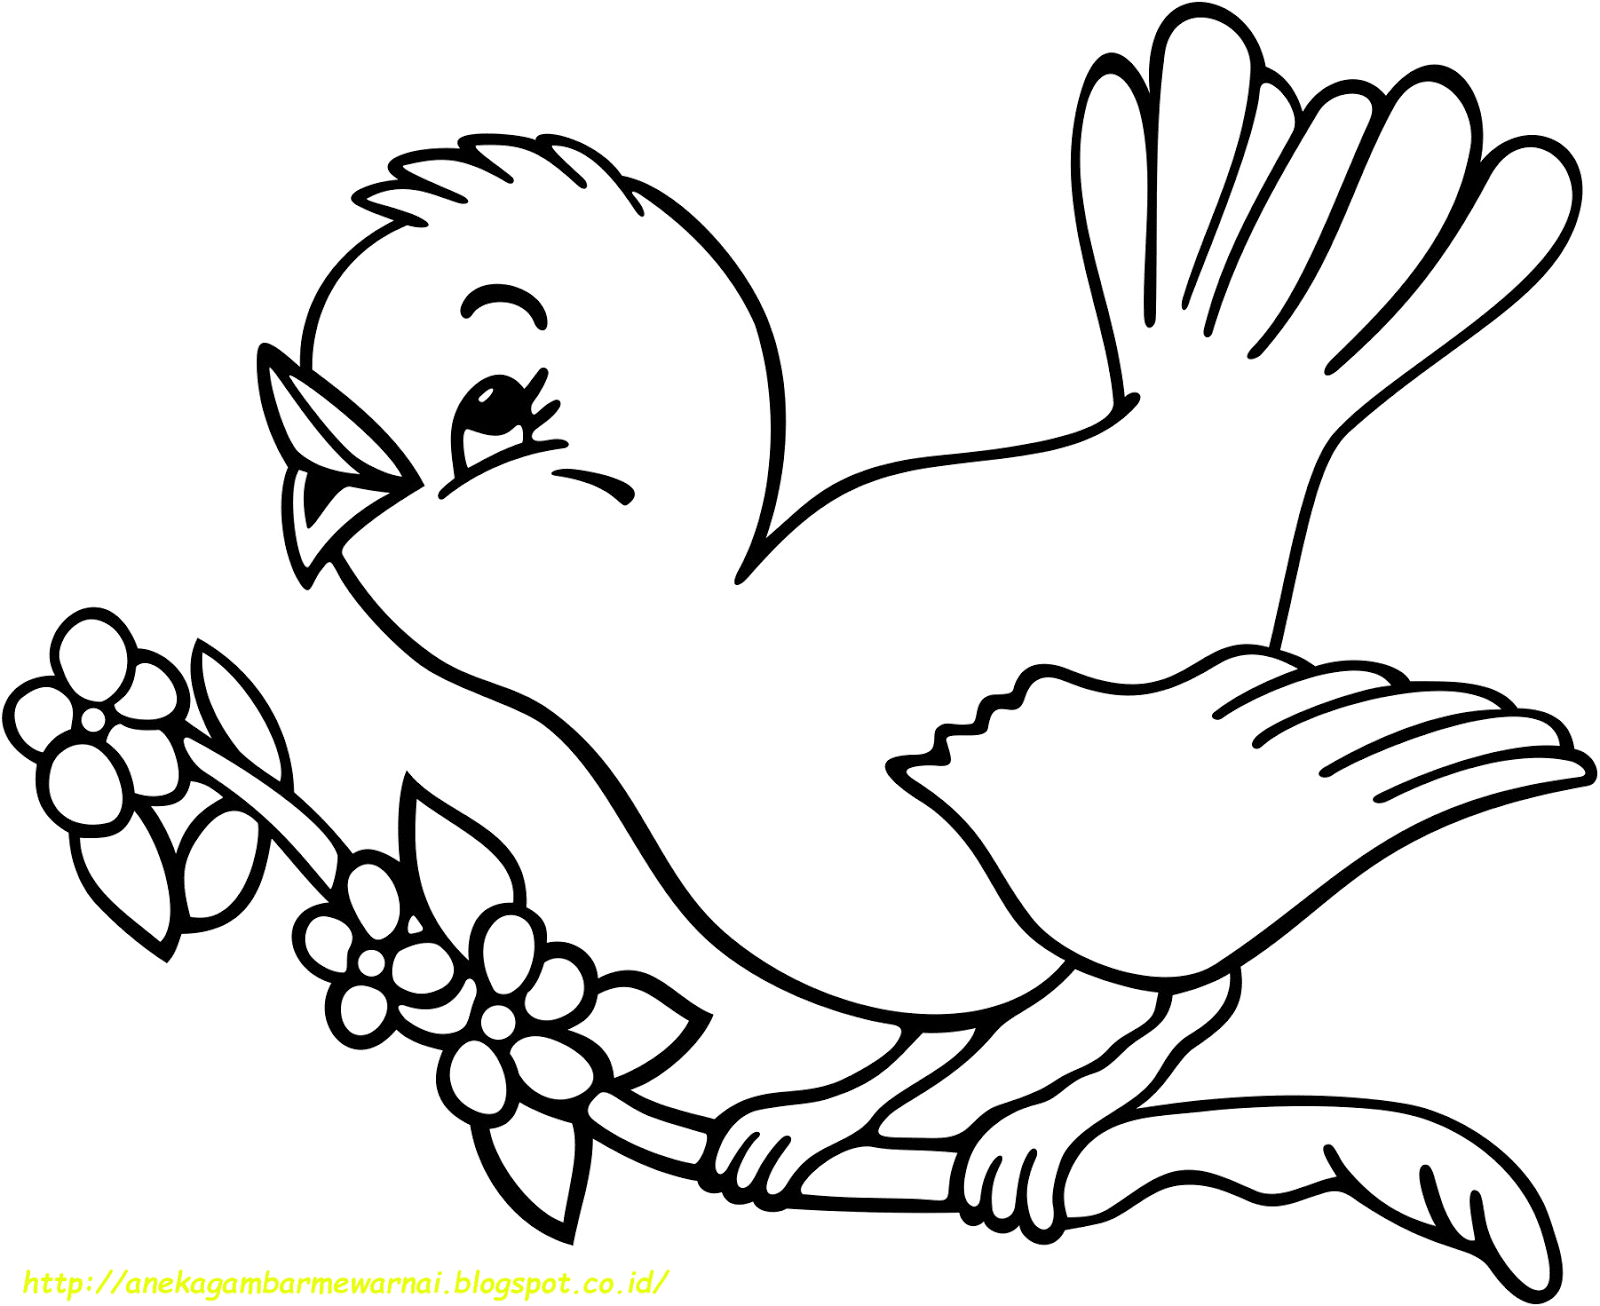 660 Gambar Kartun Burung Untuk Mewarnai Gratis